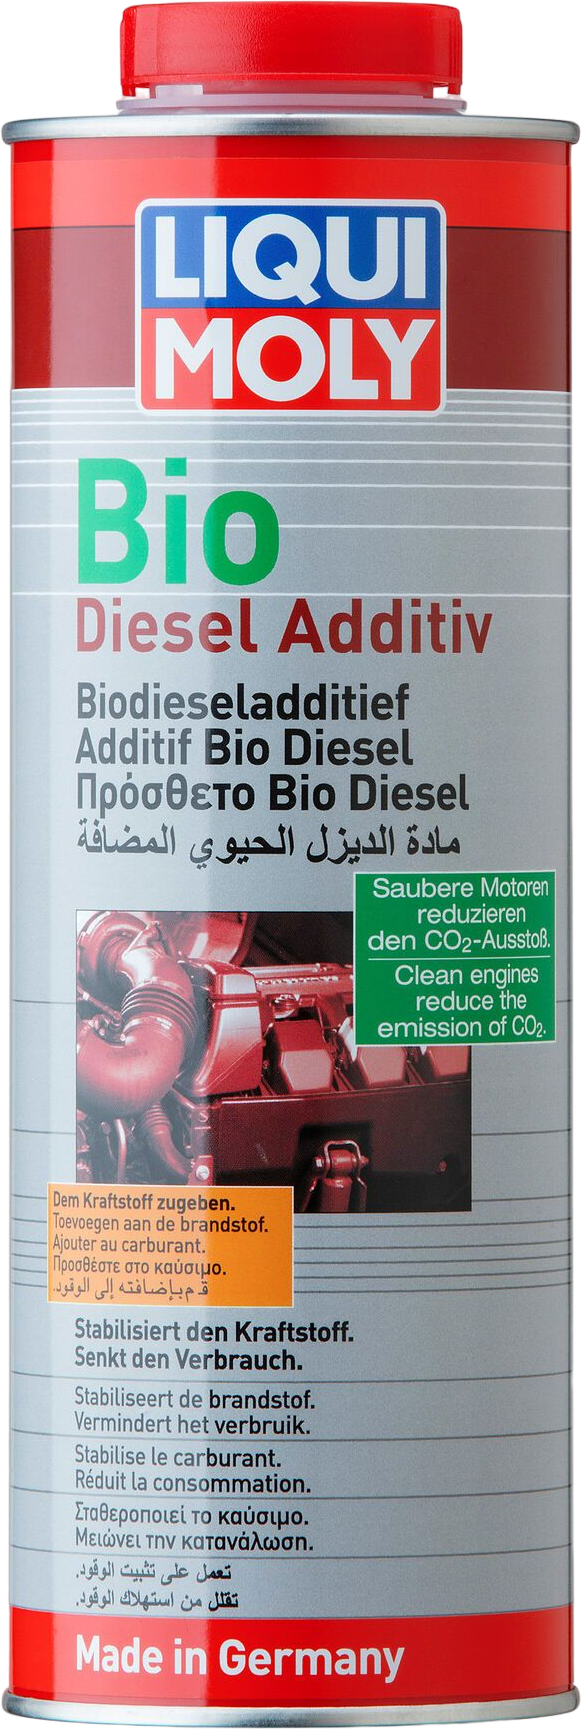 LM1812-1 Geschikt voor alle dieselmotoren met en zonder dieselpartikelfilter - ter preventie of als behandeling.de eigenschappen bij gebruik van biodiesel als brandstof.